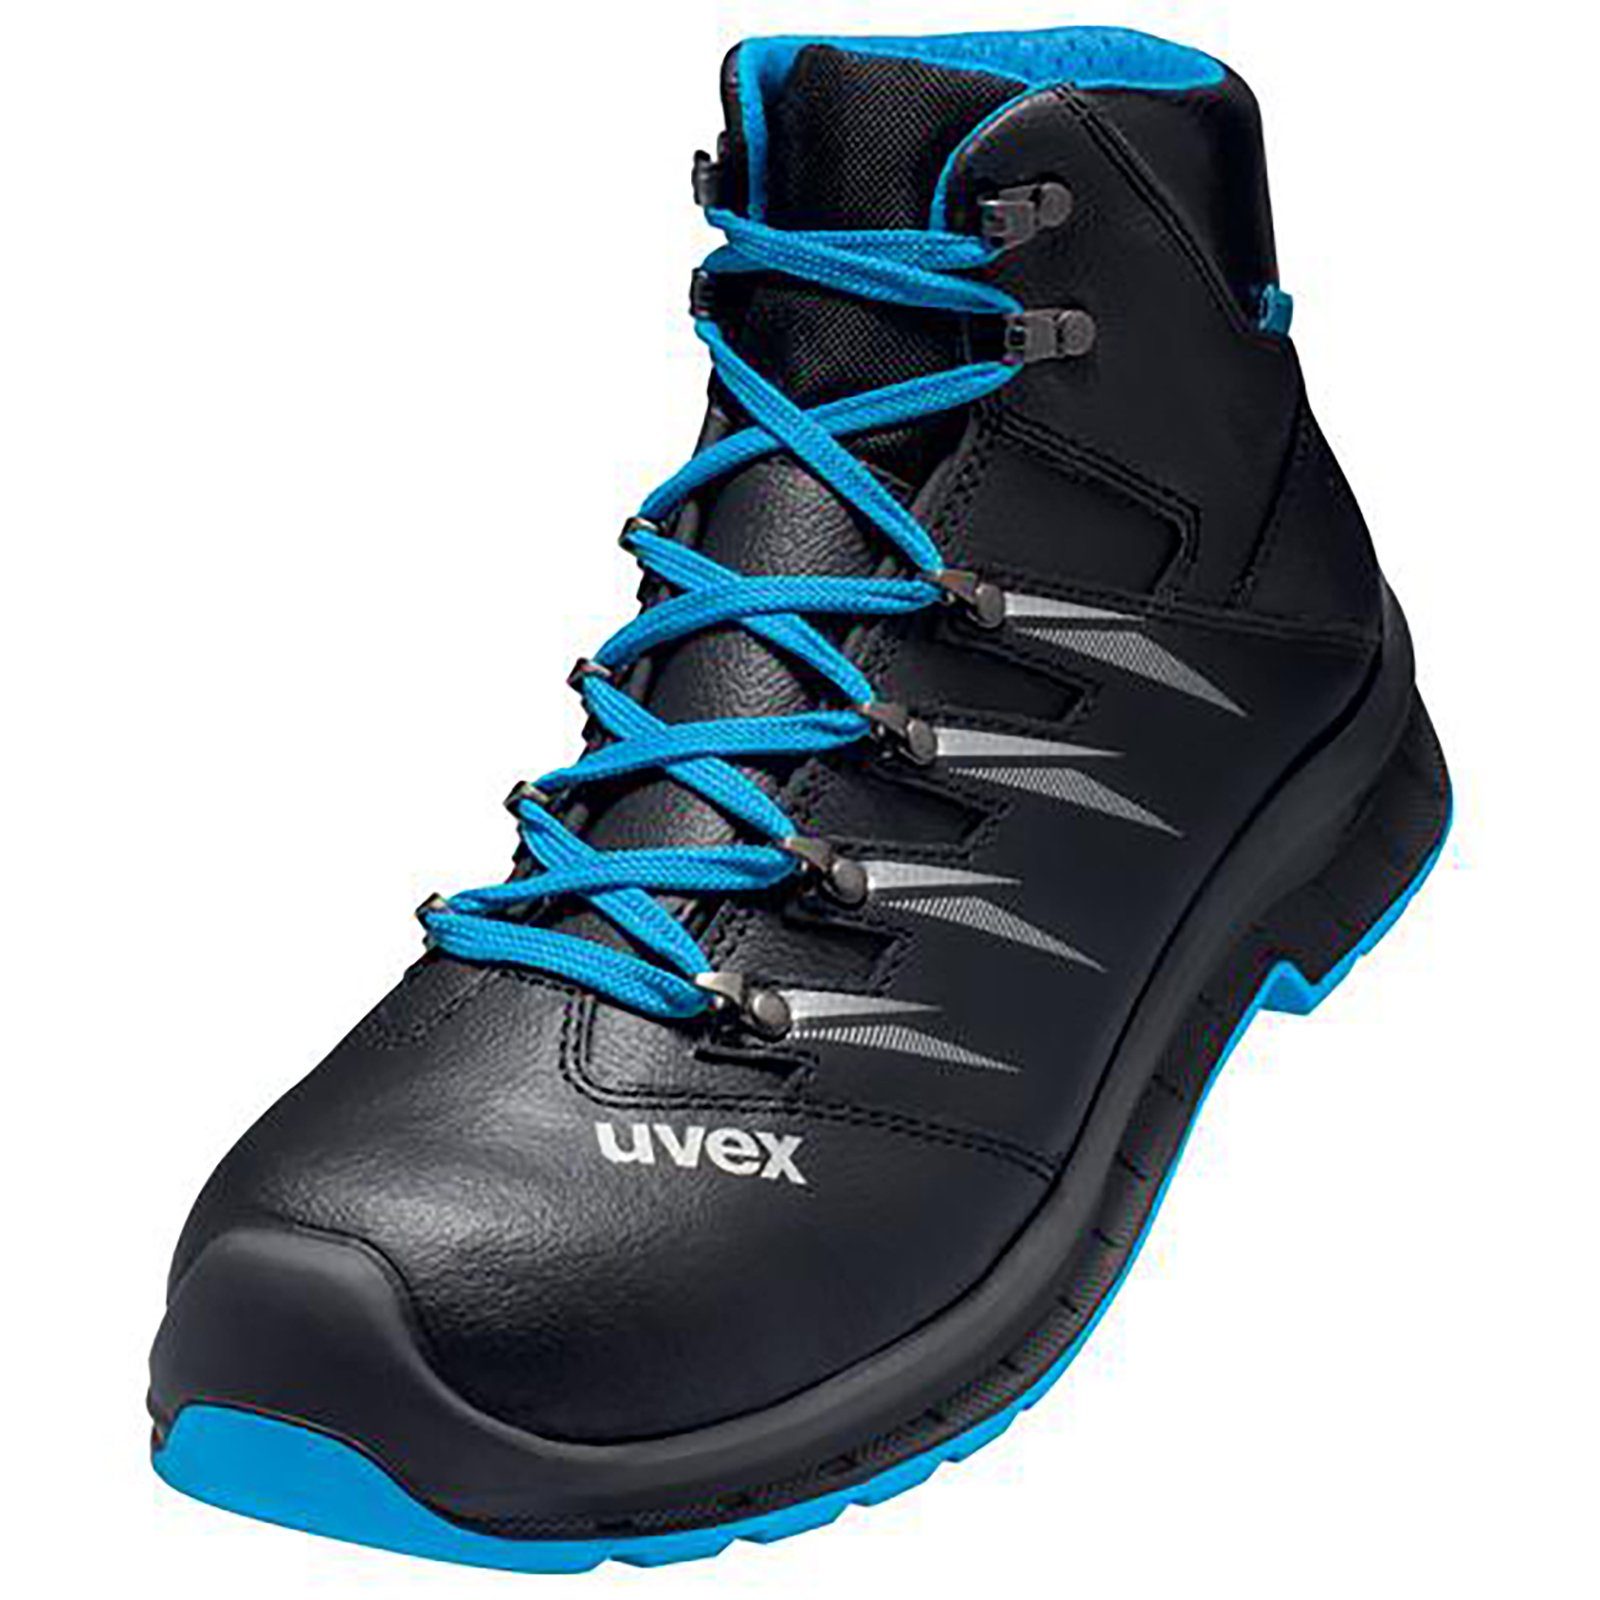 Uvex 2 Weite S3 11 Sicherheitsstiefel Stiefel blau, schwarz trend